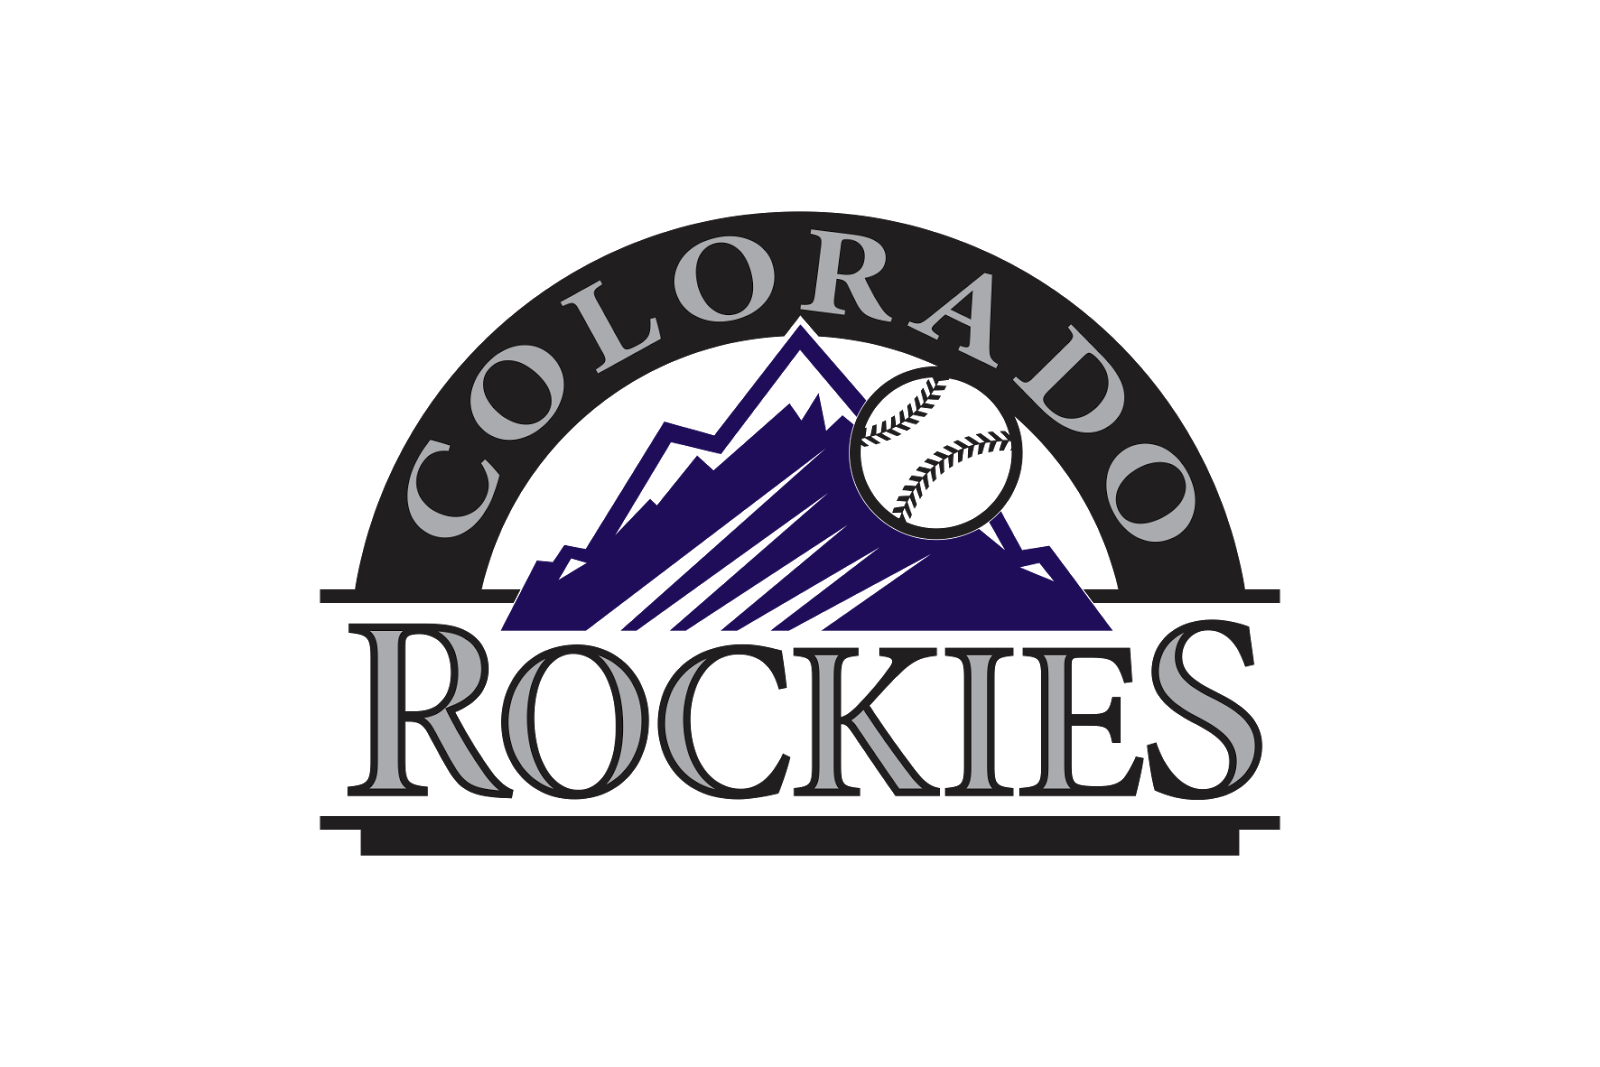 Colorado Rockies Logo Vector at Collection of